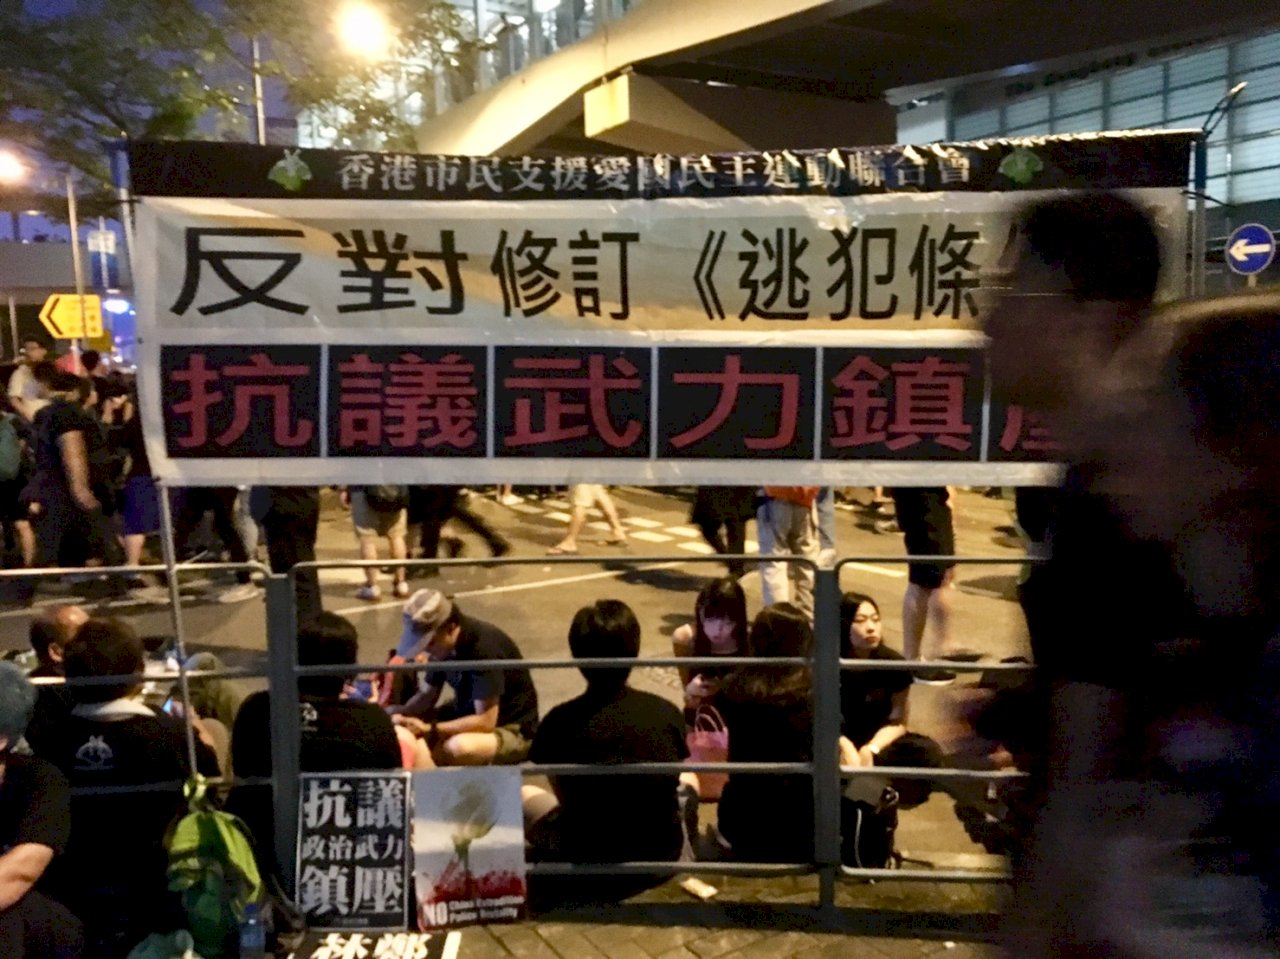 移民或抗爭? 新一代香港人的掙扎